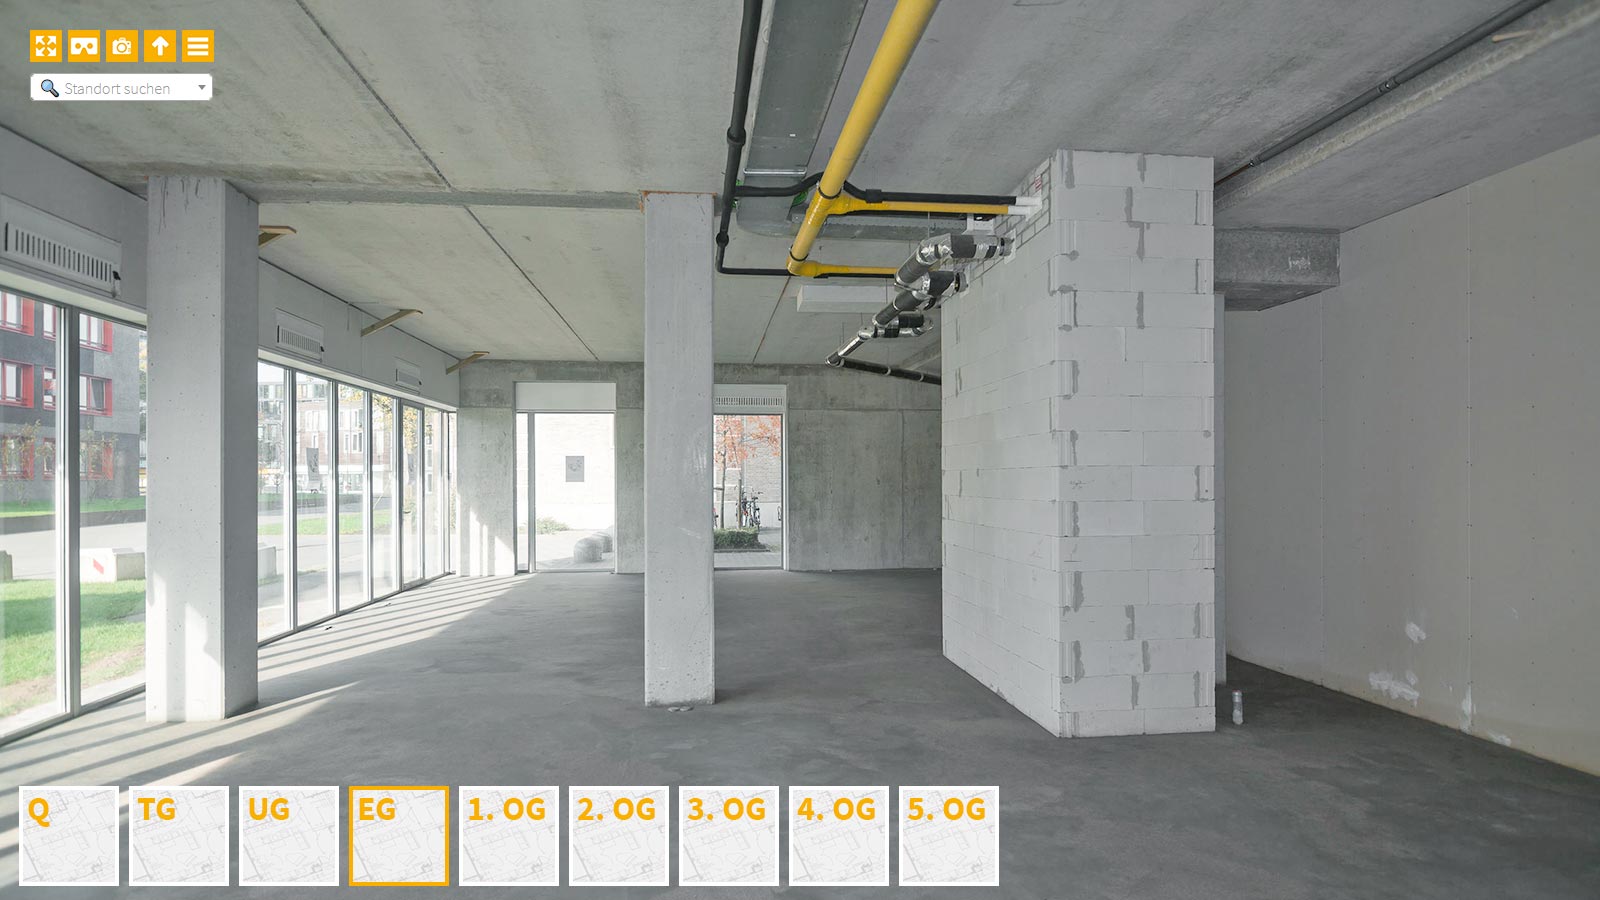 Baudokumentation 360 Grad bei gestörten Projekten in 


	


	


	


	


	


	


	


	


	


	Gütersloh









, Bilddokumentation als virtueller Rundgang